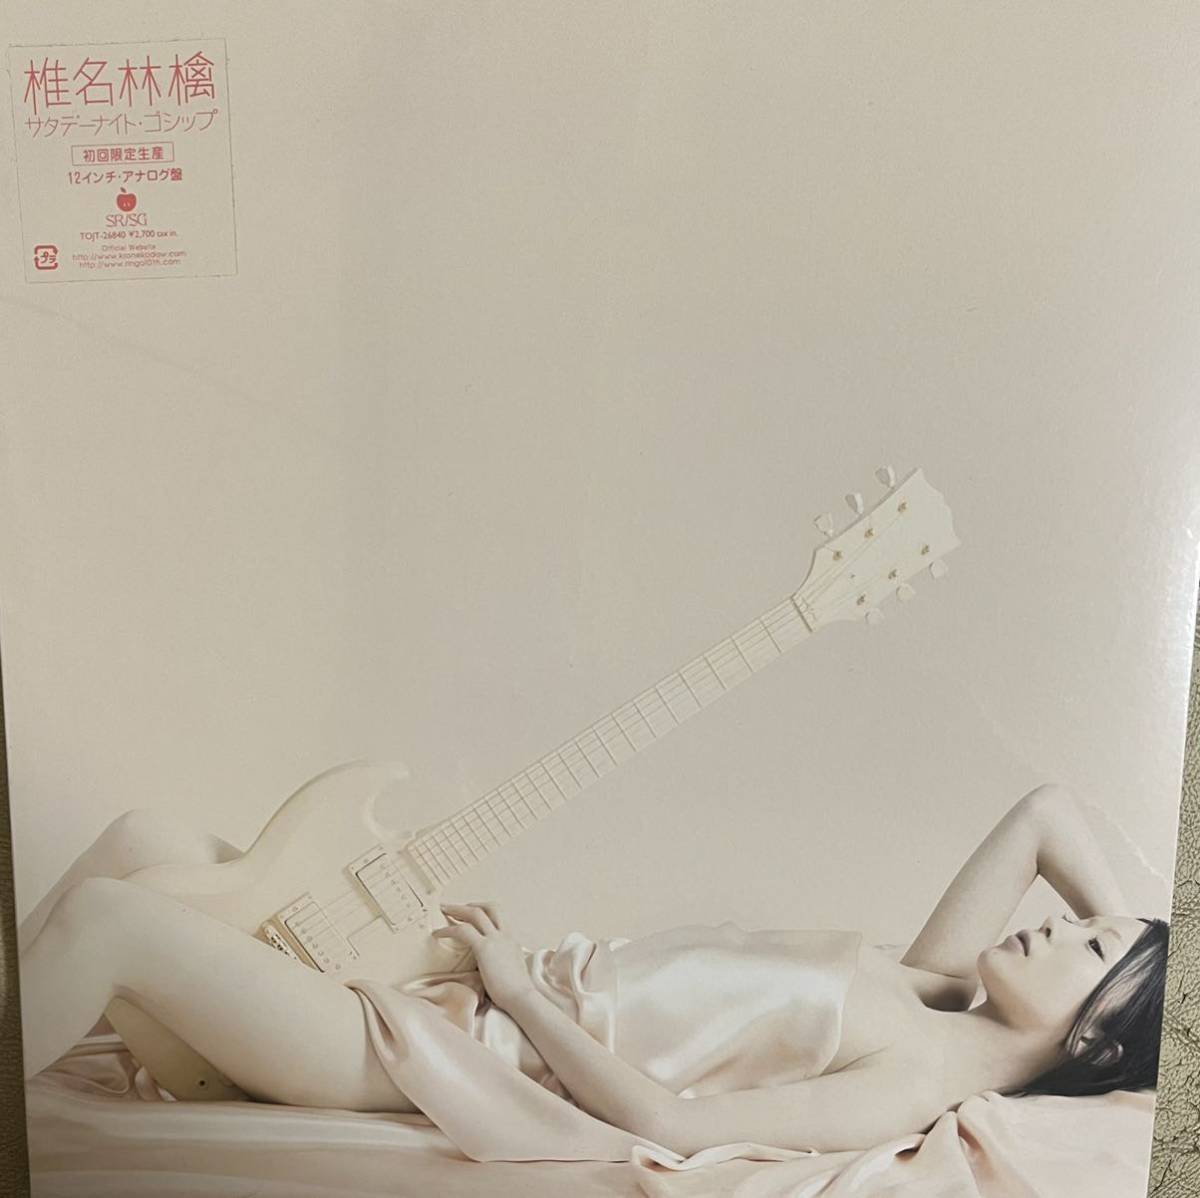 椎名林檎「サタデー・ナイト・ゴシップ」アナログ盤 レコード LP 未 